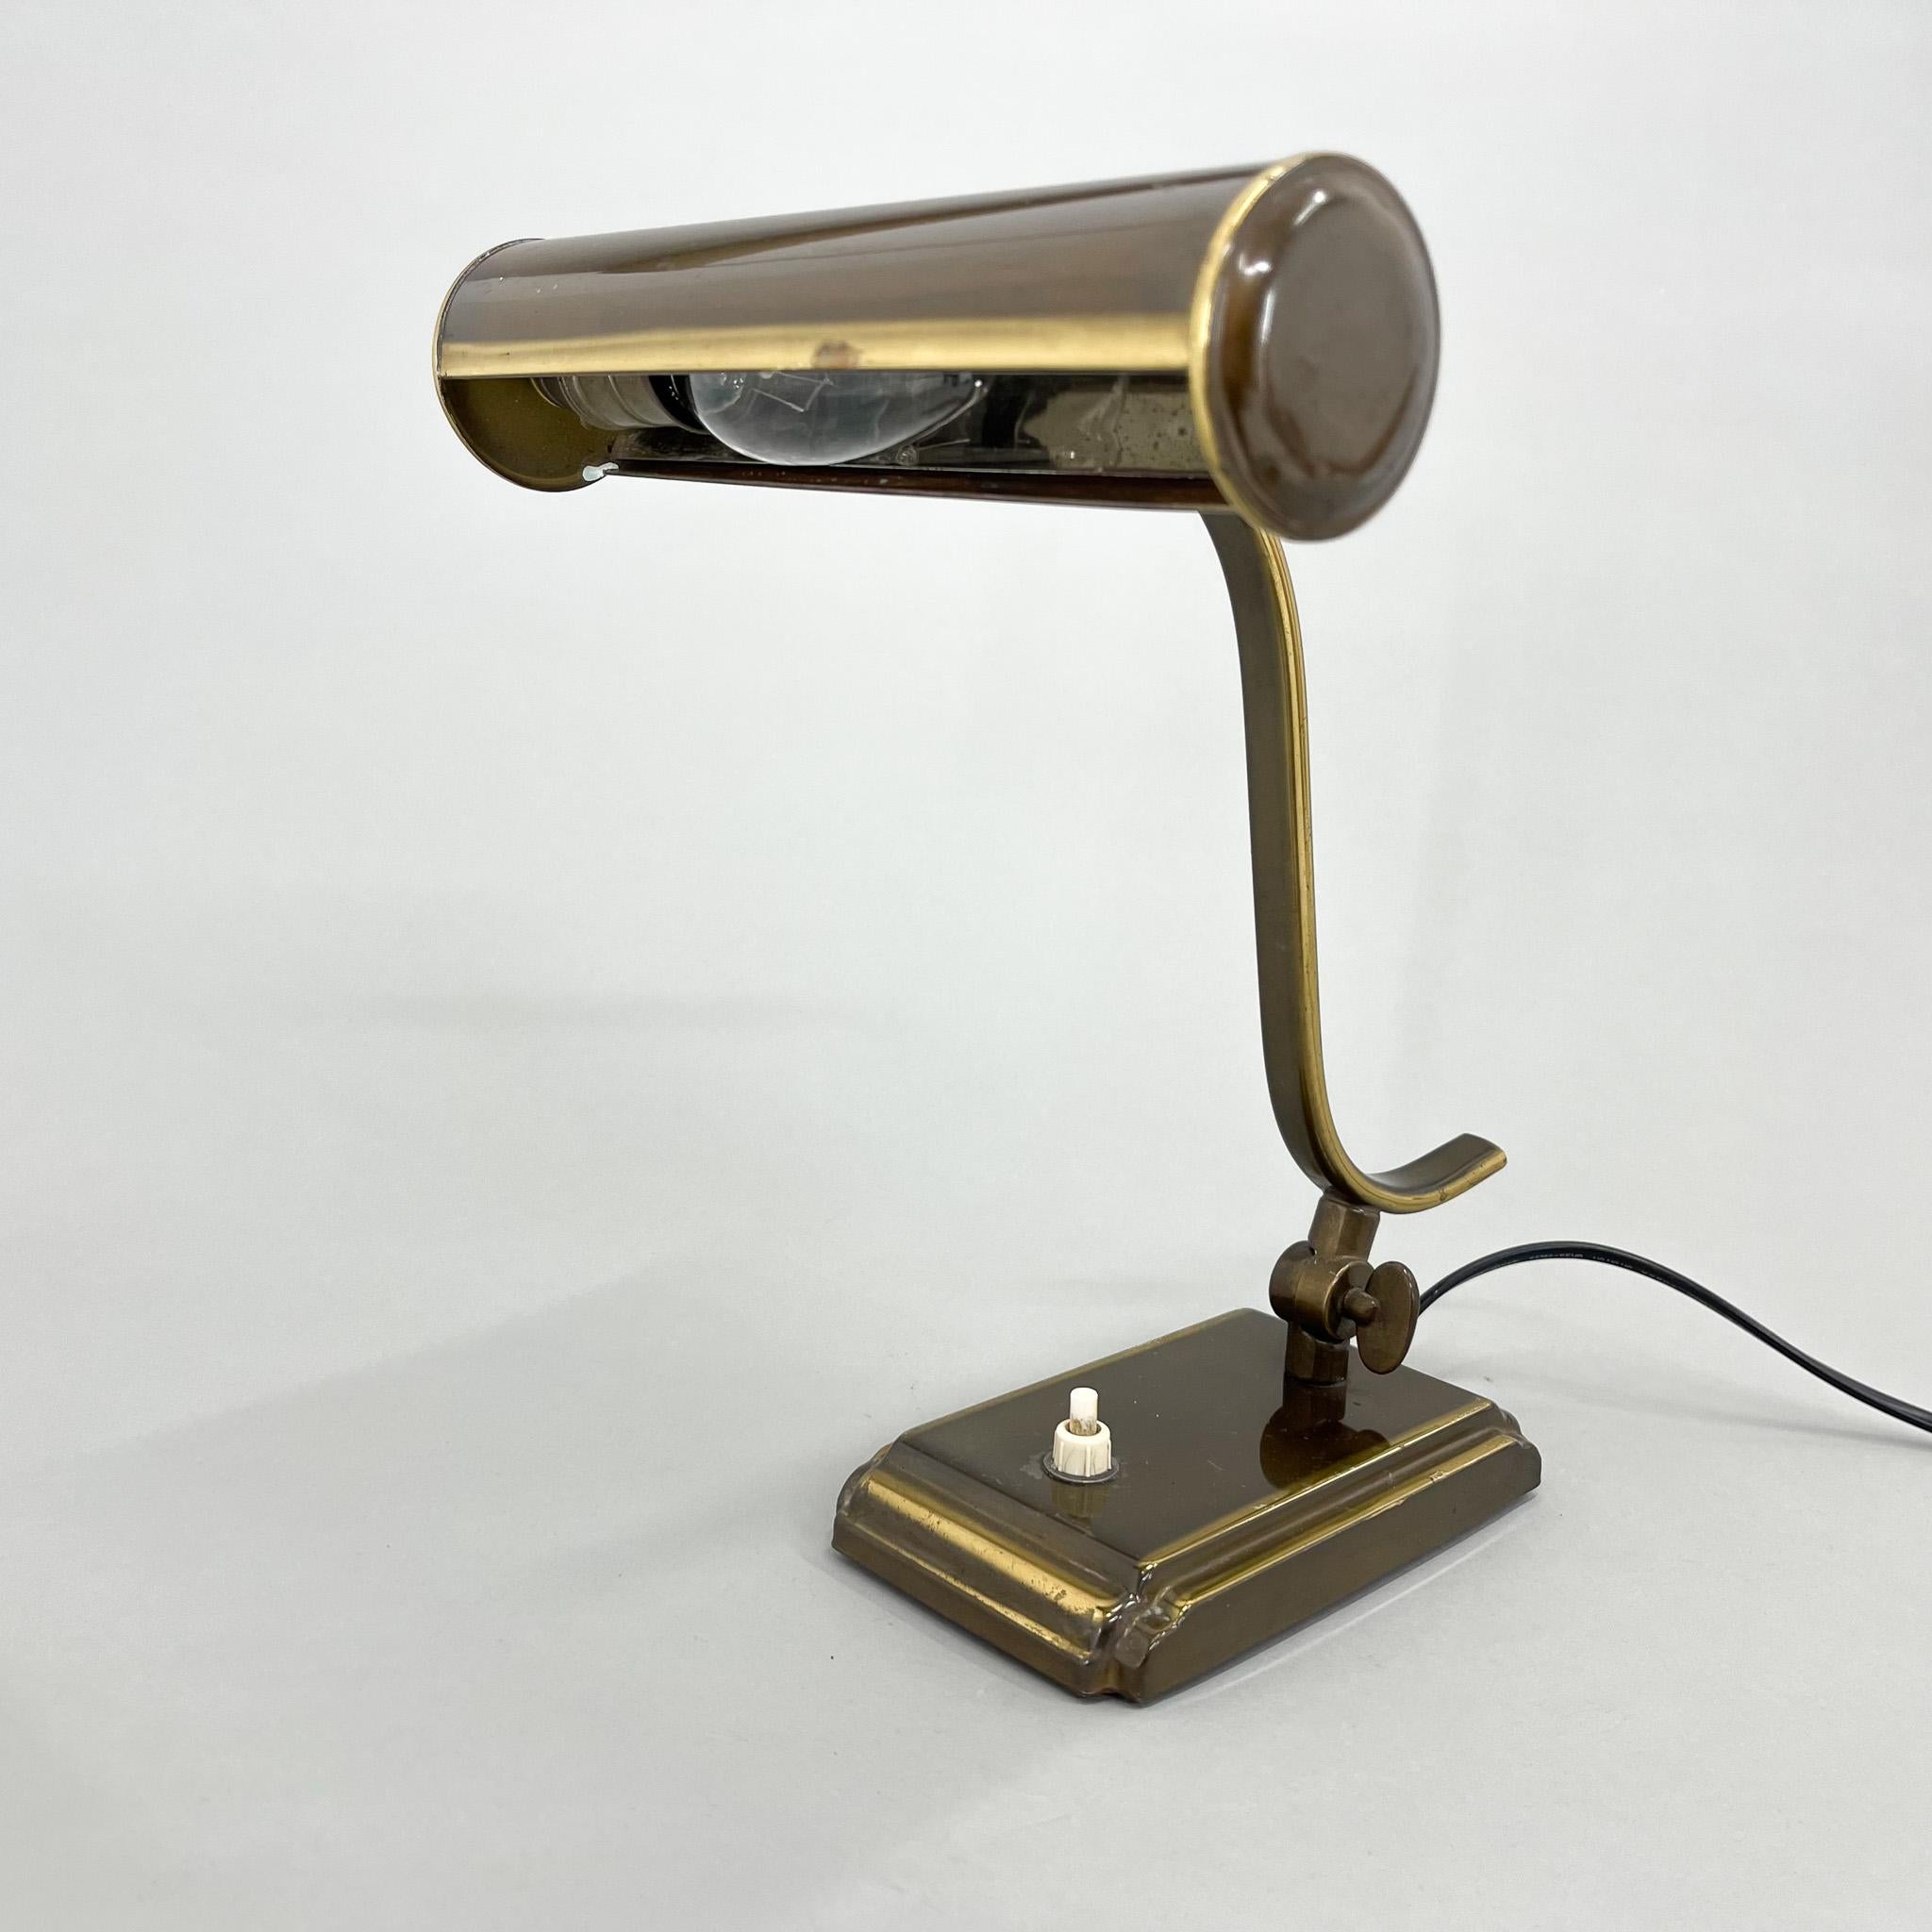 Lampe de table ou de bureau réglable avec une patine d'aspect laiton. Fabriqué en Pologne dans les années 1940. Ampoules : 1x E14.